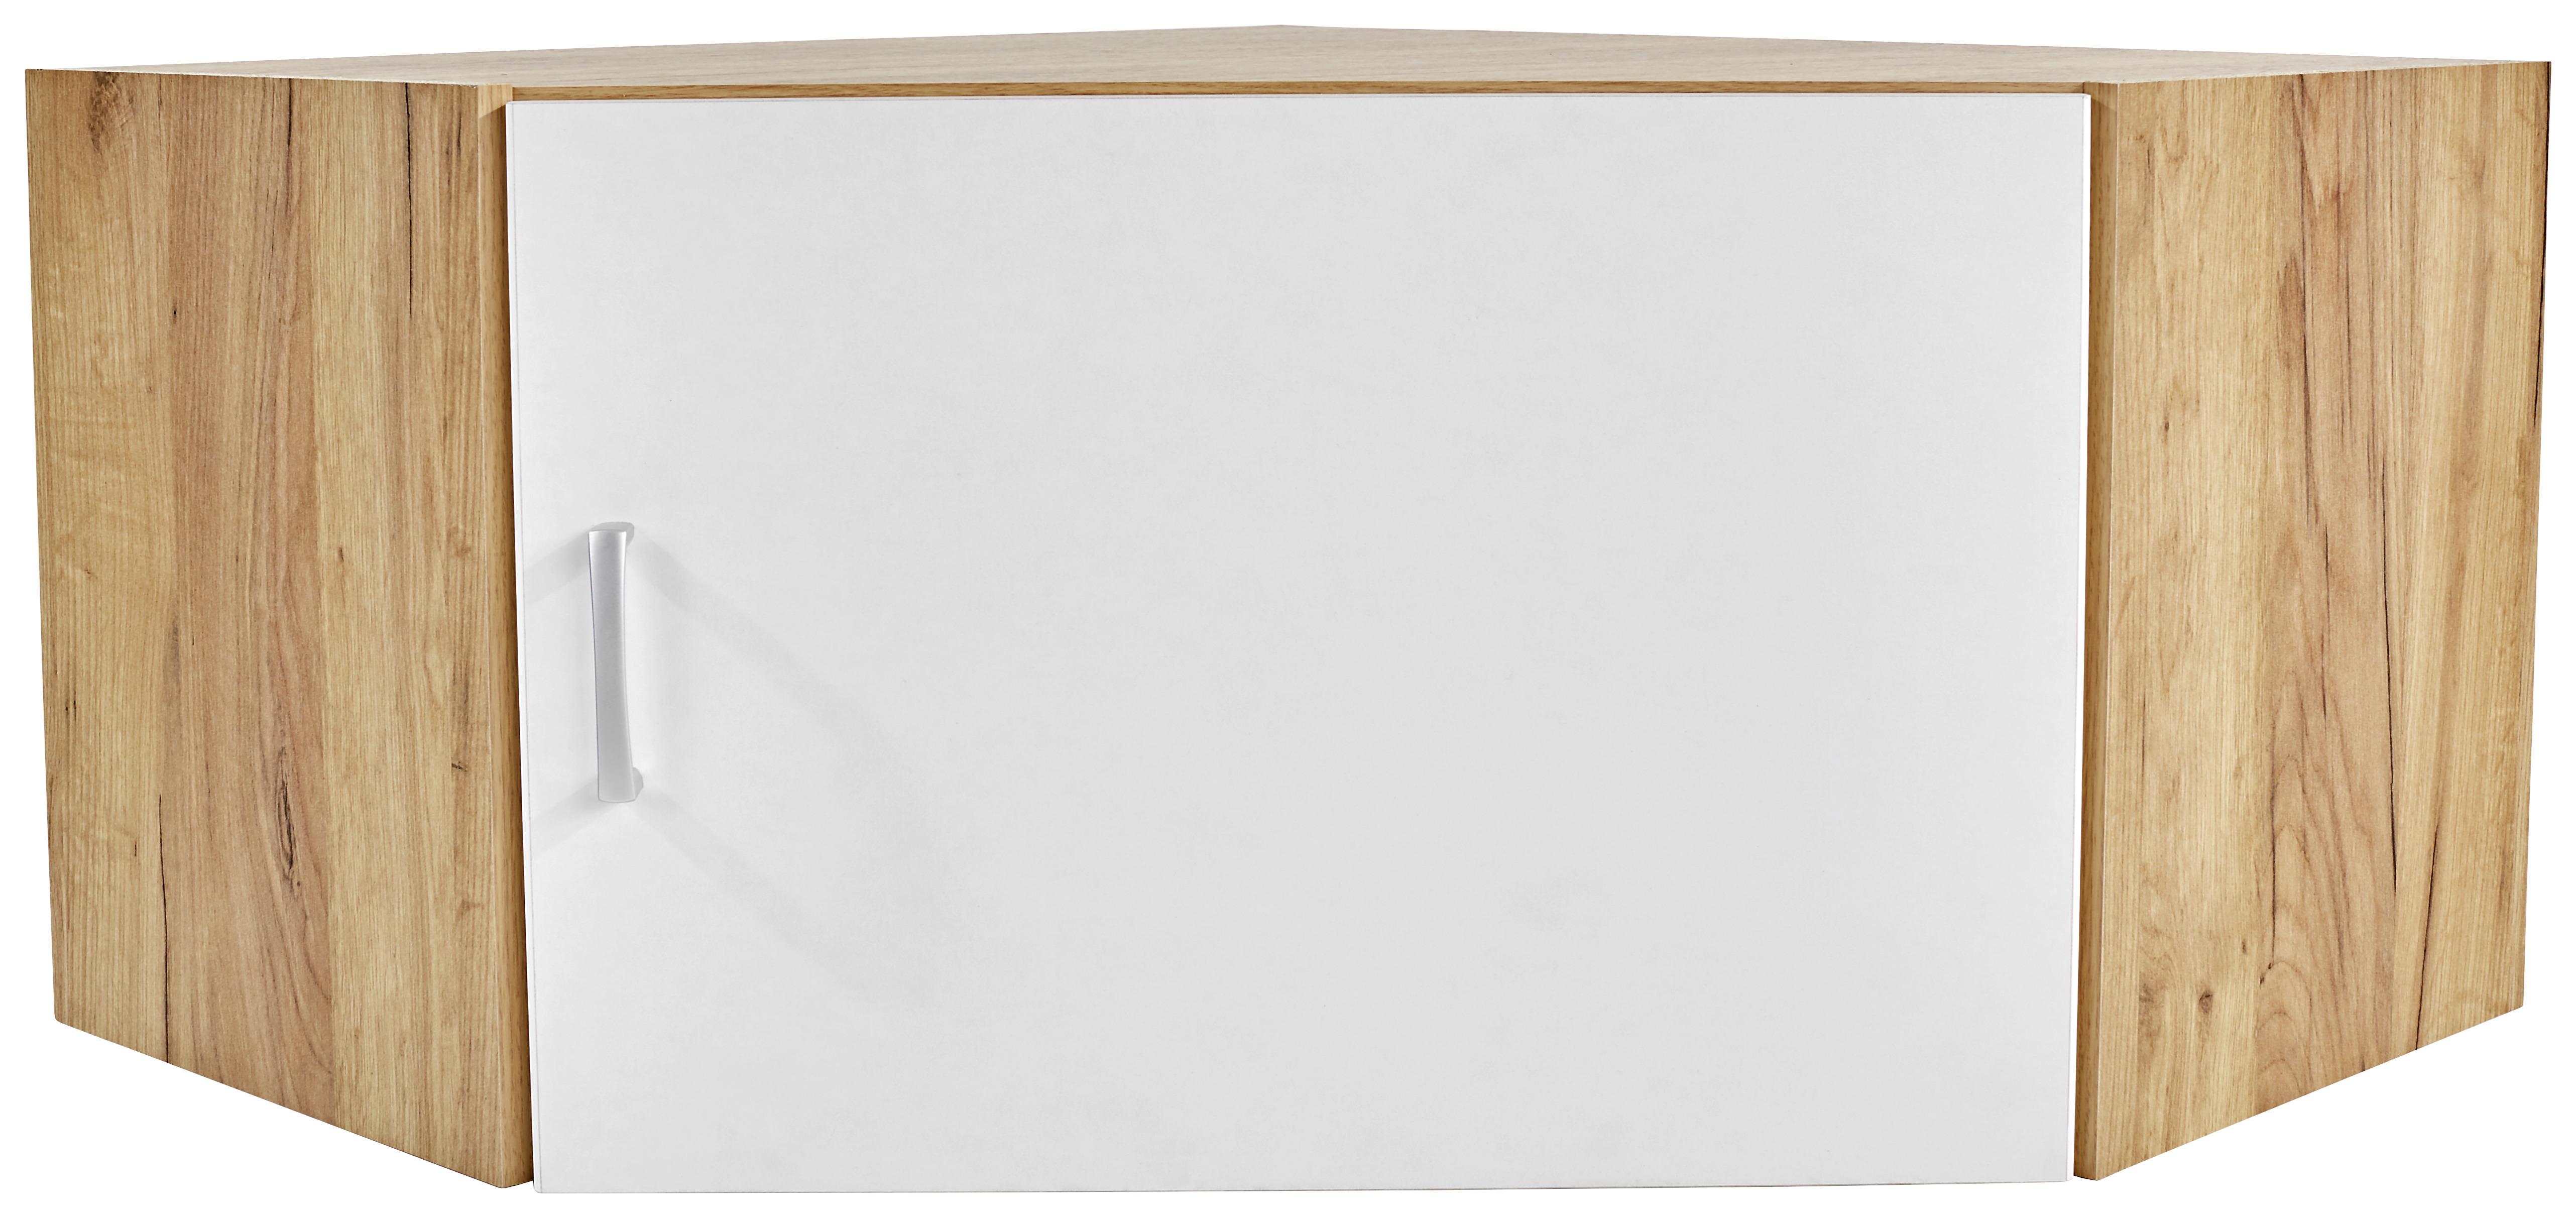 Felsőszekrény Sarokszekrényhez Tio - Tölgyfa/Fehér, konvencionális, Faalapú anyag (80/80cm)